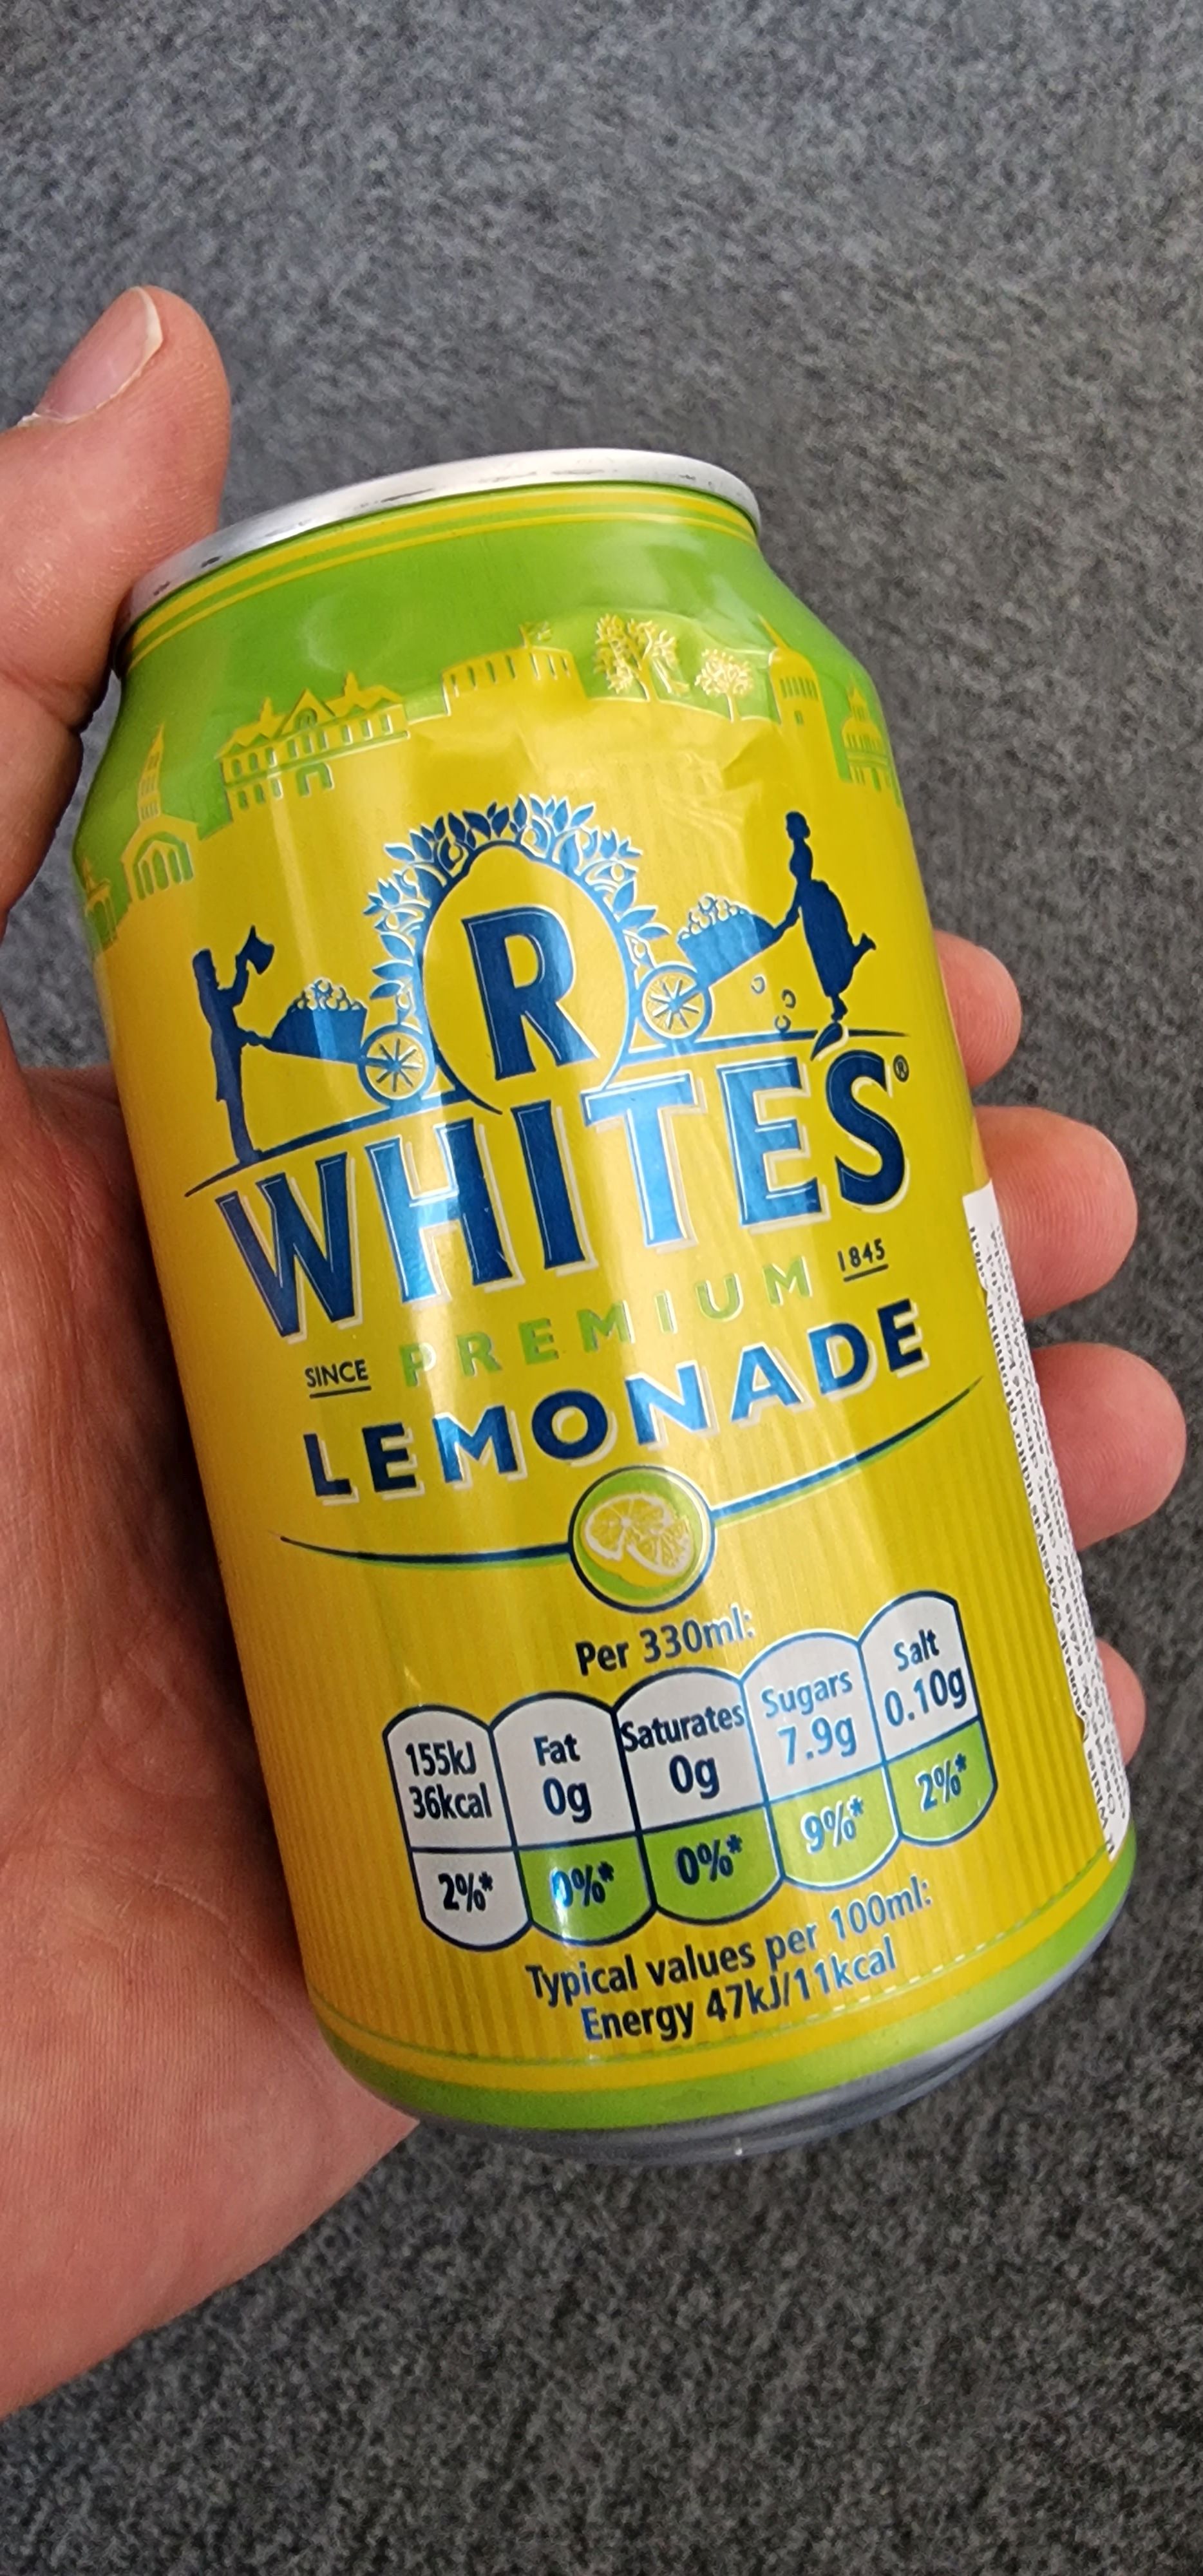 R Whites Premium Lemonade